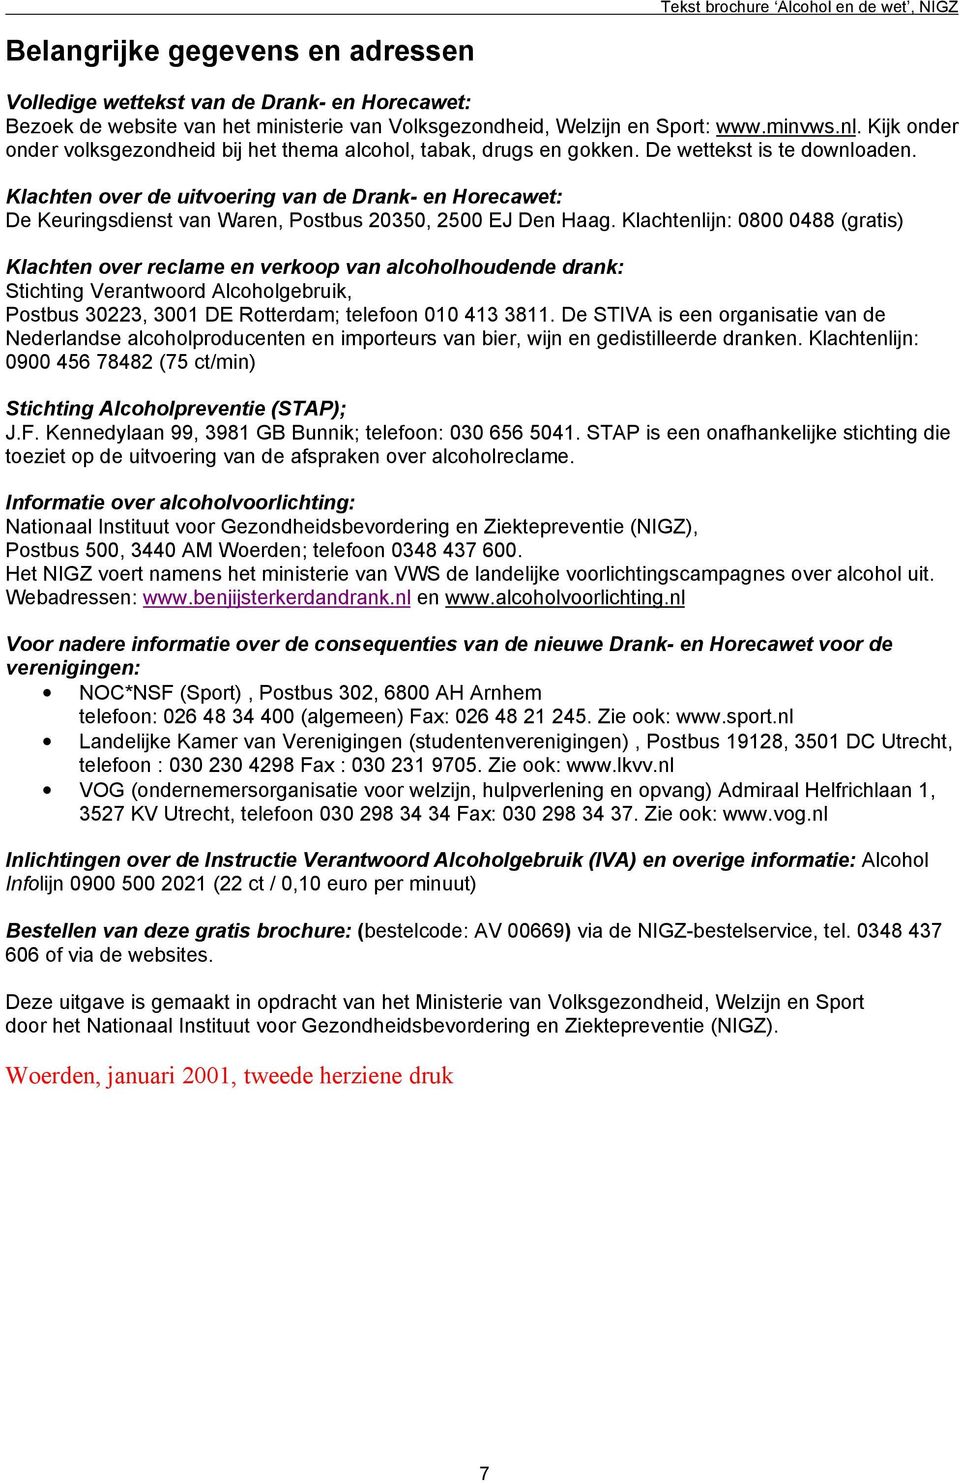 Klachten over de uitvoering van de Drank- en Horecawet: De Keuringsdienst van Waren, Postbus 20350, 2500 EJ Den Haag.